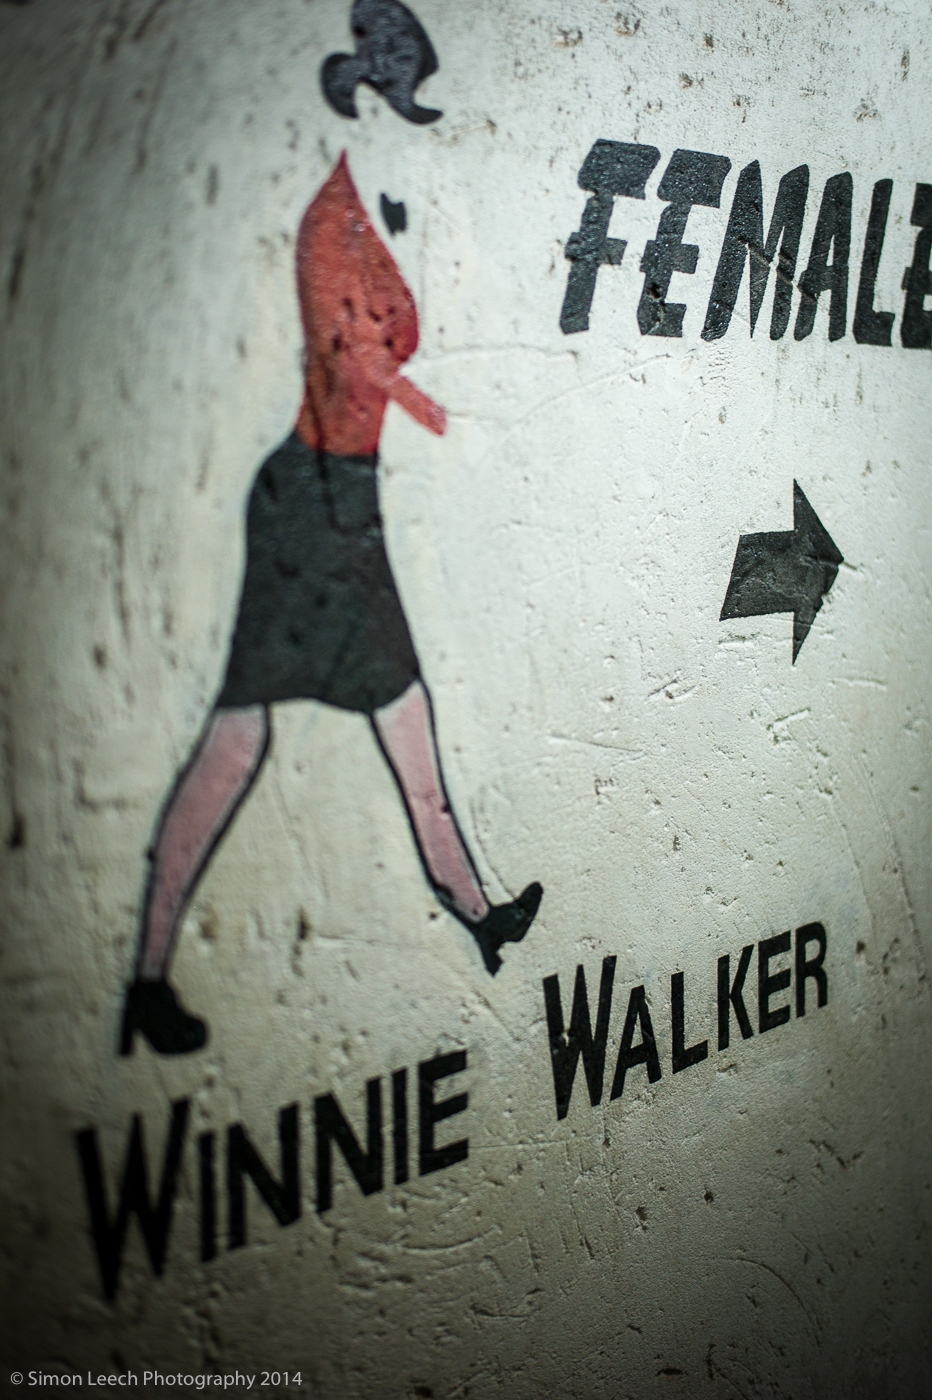 Winnie Walker